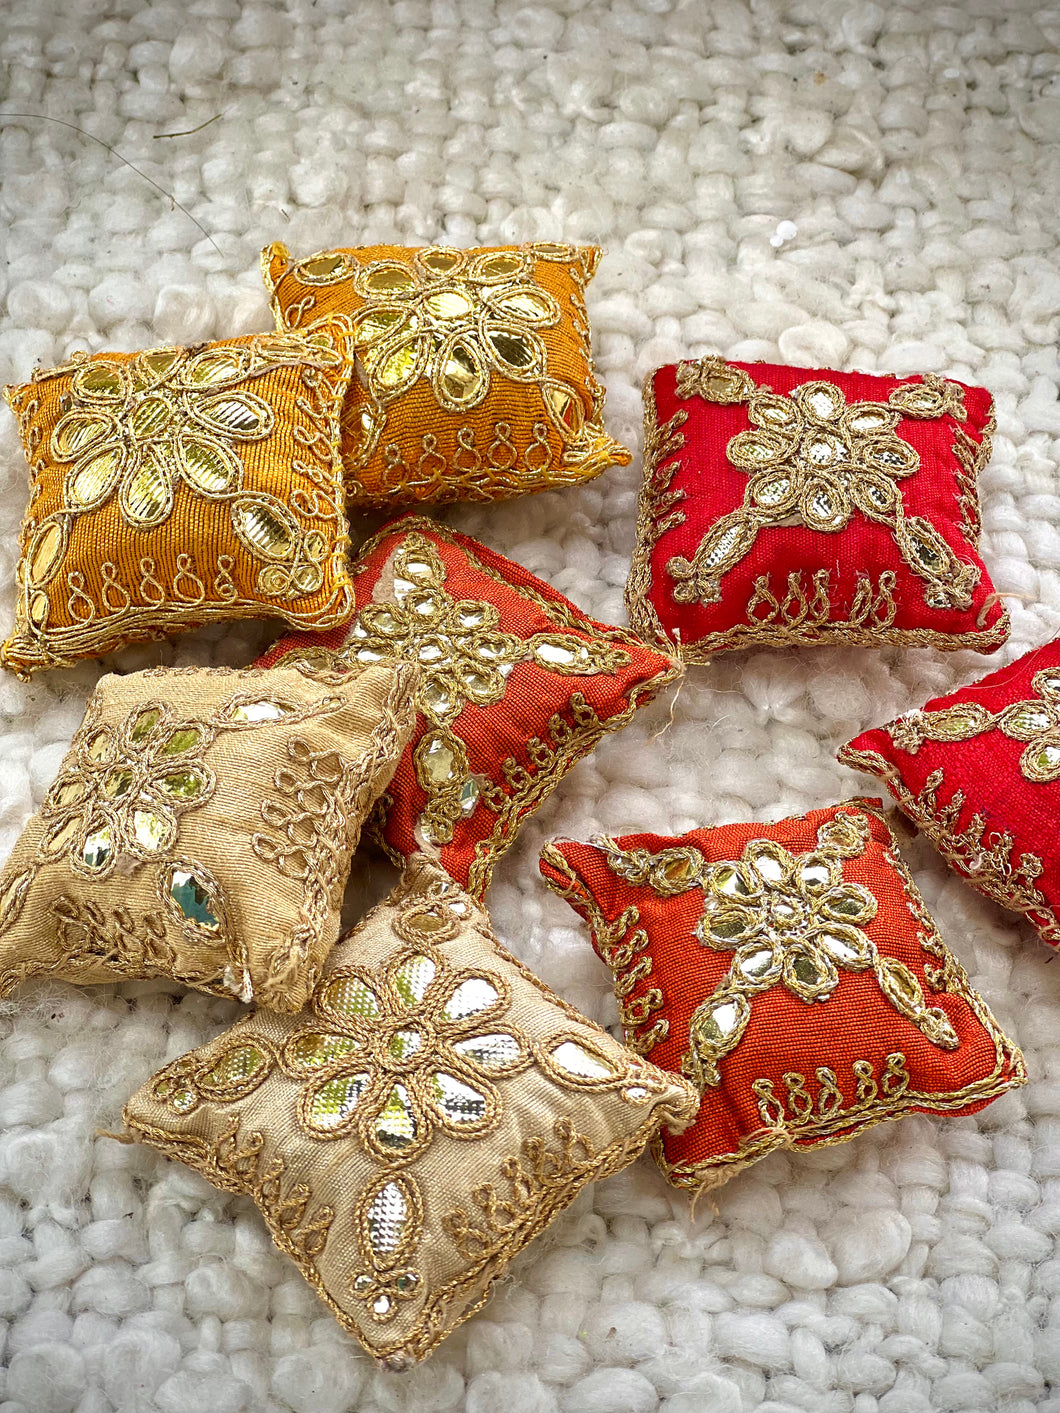 Mini Square Pillows for Bhagwan -Pair